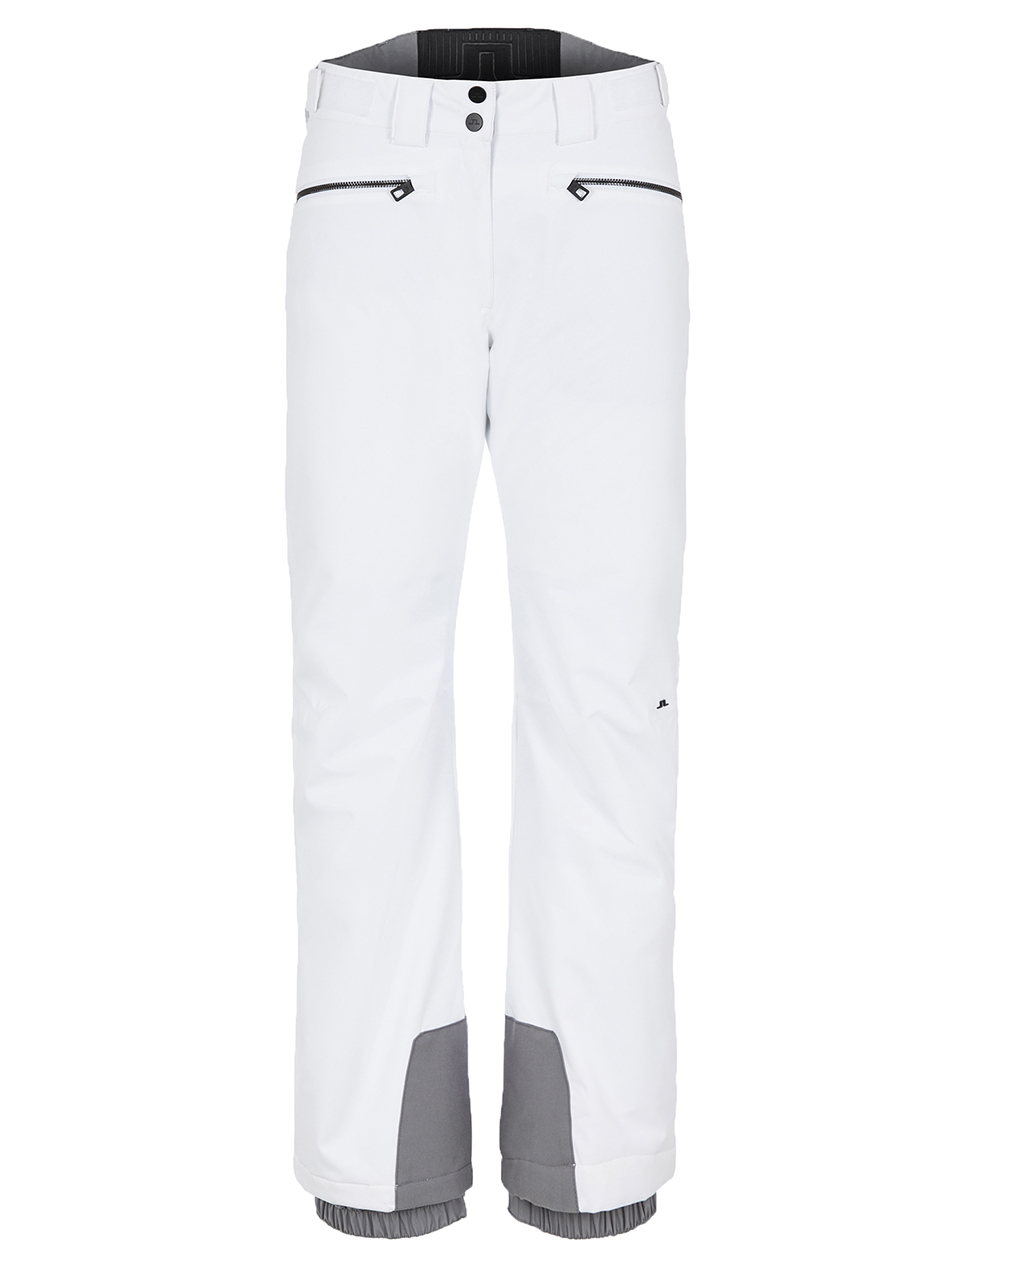 Moncler Grenoble - Panelled GORE TEX Ski Trousers - Men - White Moncler  Grenoble